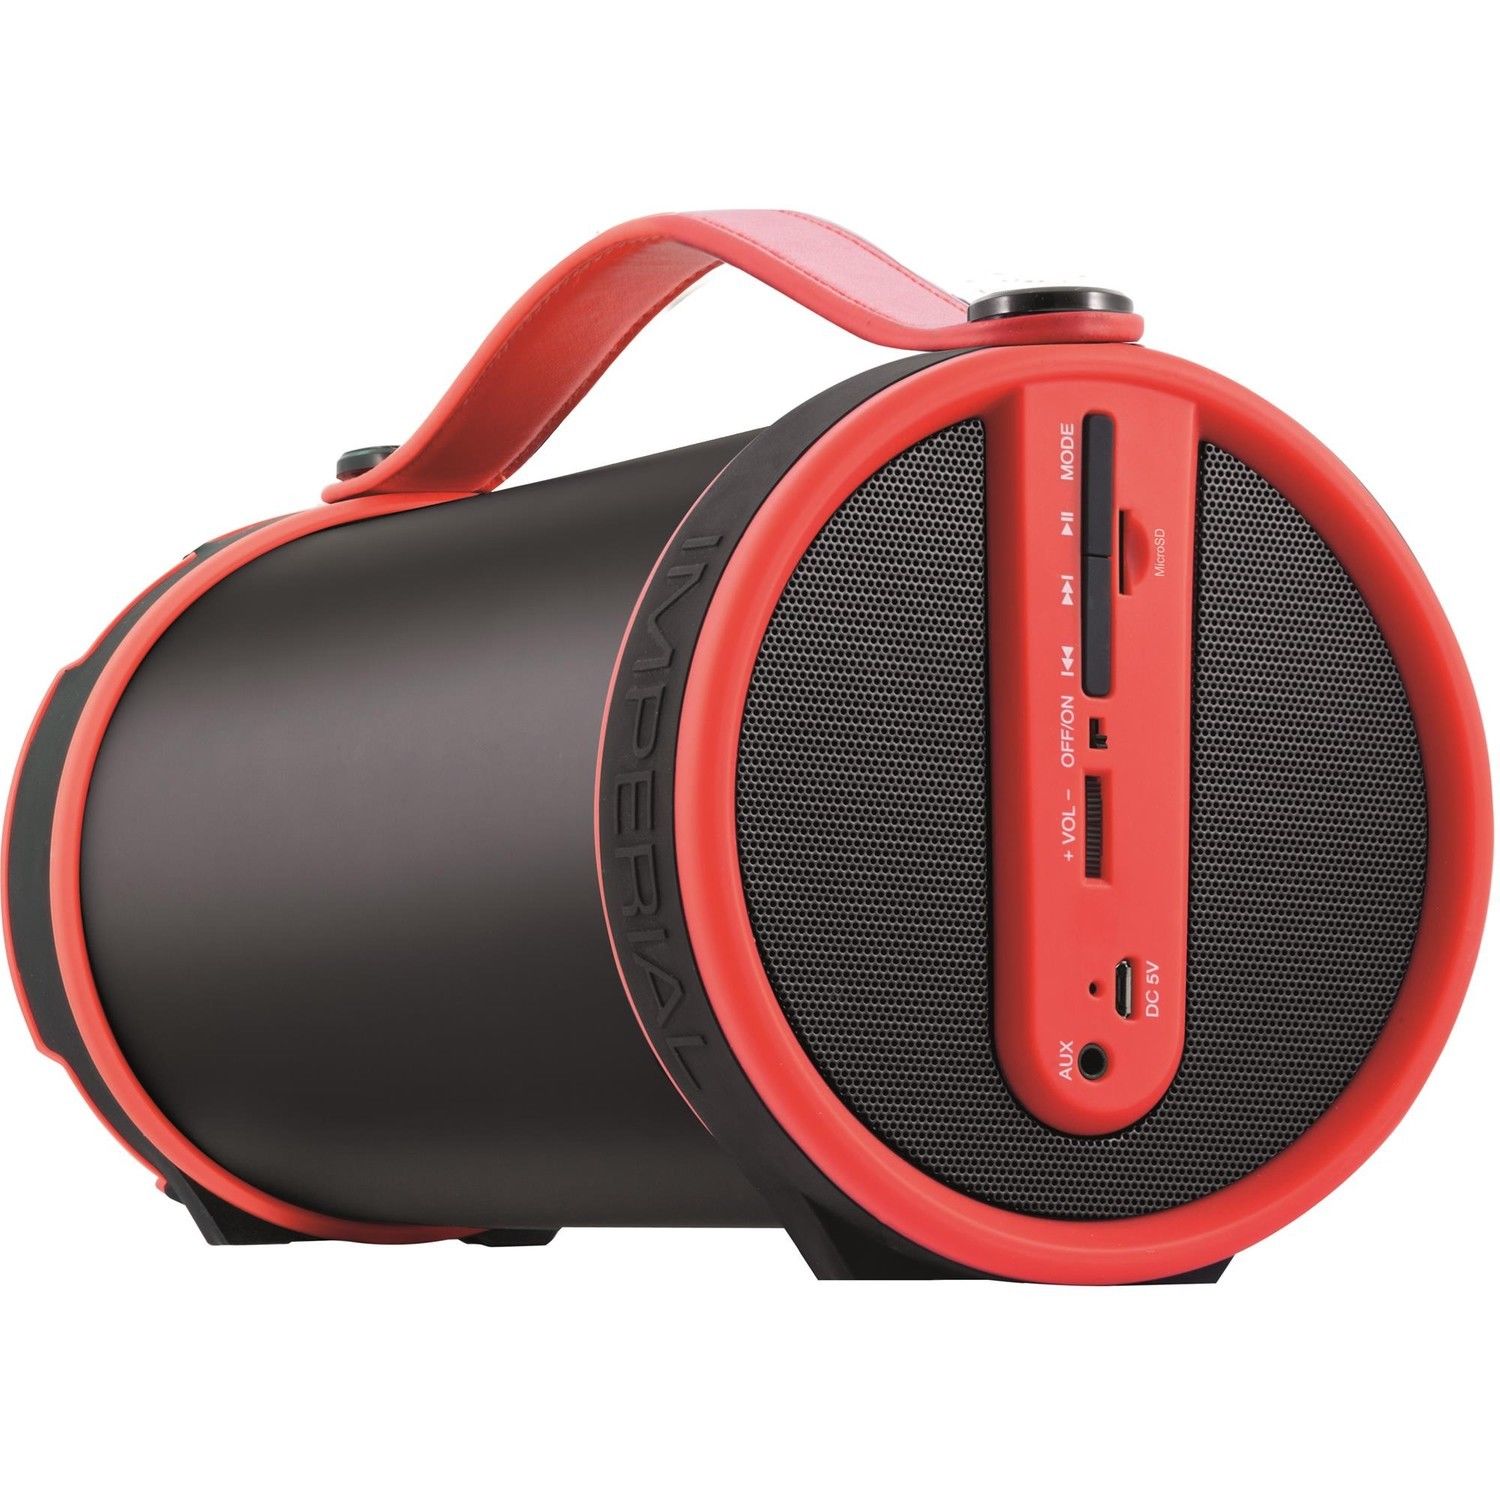 Bild zu 2.1 Bluetooth Lautsprecher Imperial Beatsman für 24,99€